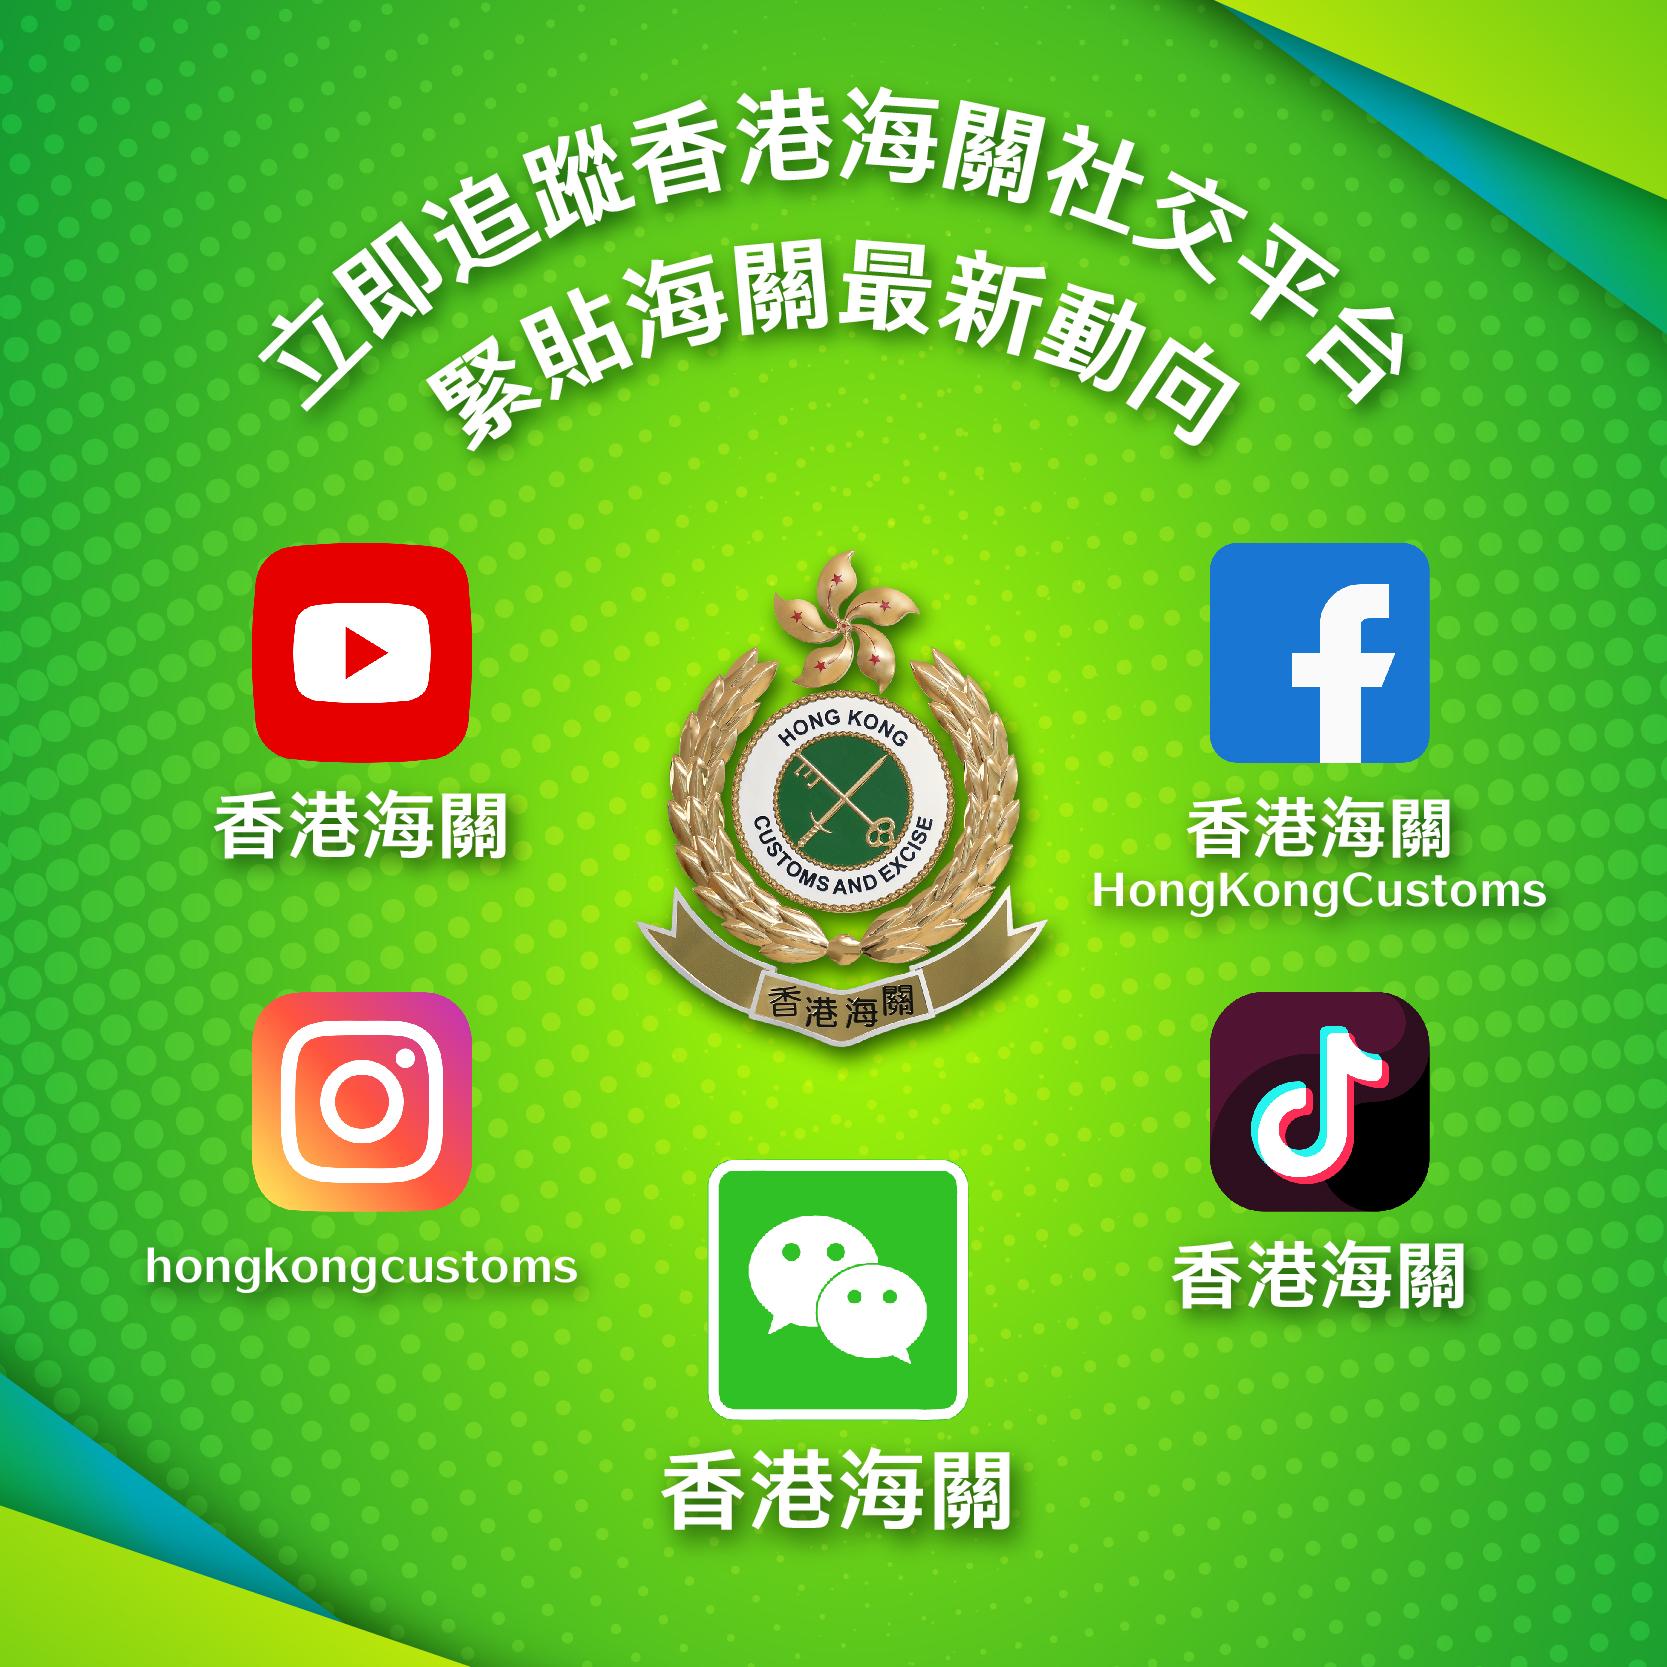 「香港海关」微信官方帐号今日（七月一日）正式启用，这是继开设YouTube频道、Facebook专页、Instagram帐户及抖音官方帐号后，新增设的第五个社交媒体官方平台。